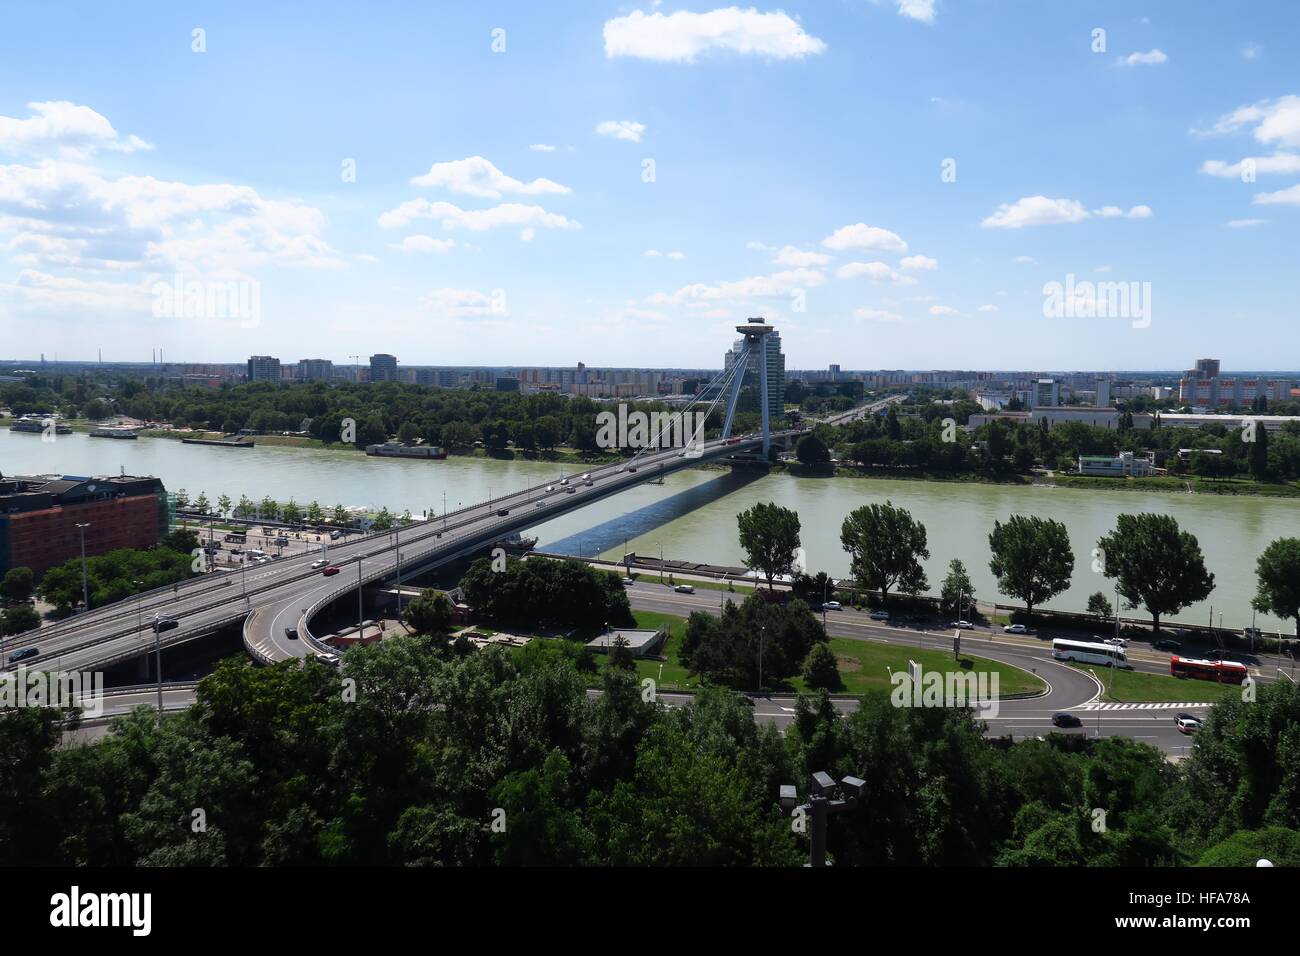 New Bridge over Danube River in Slovakias Capital Bratislava Stock Photo